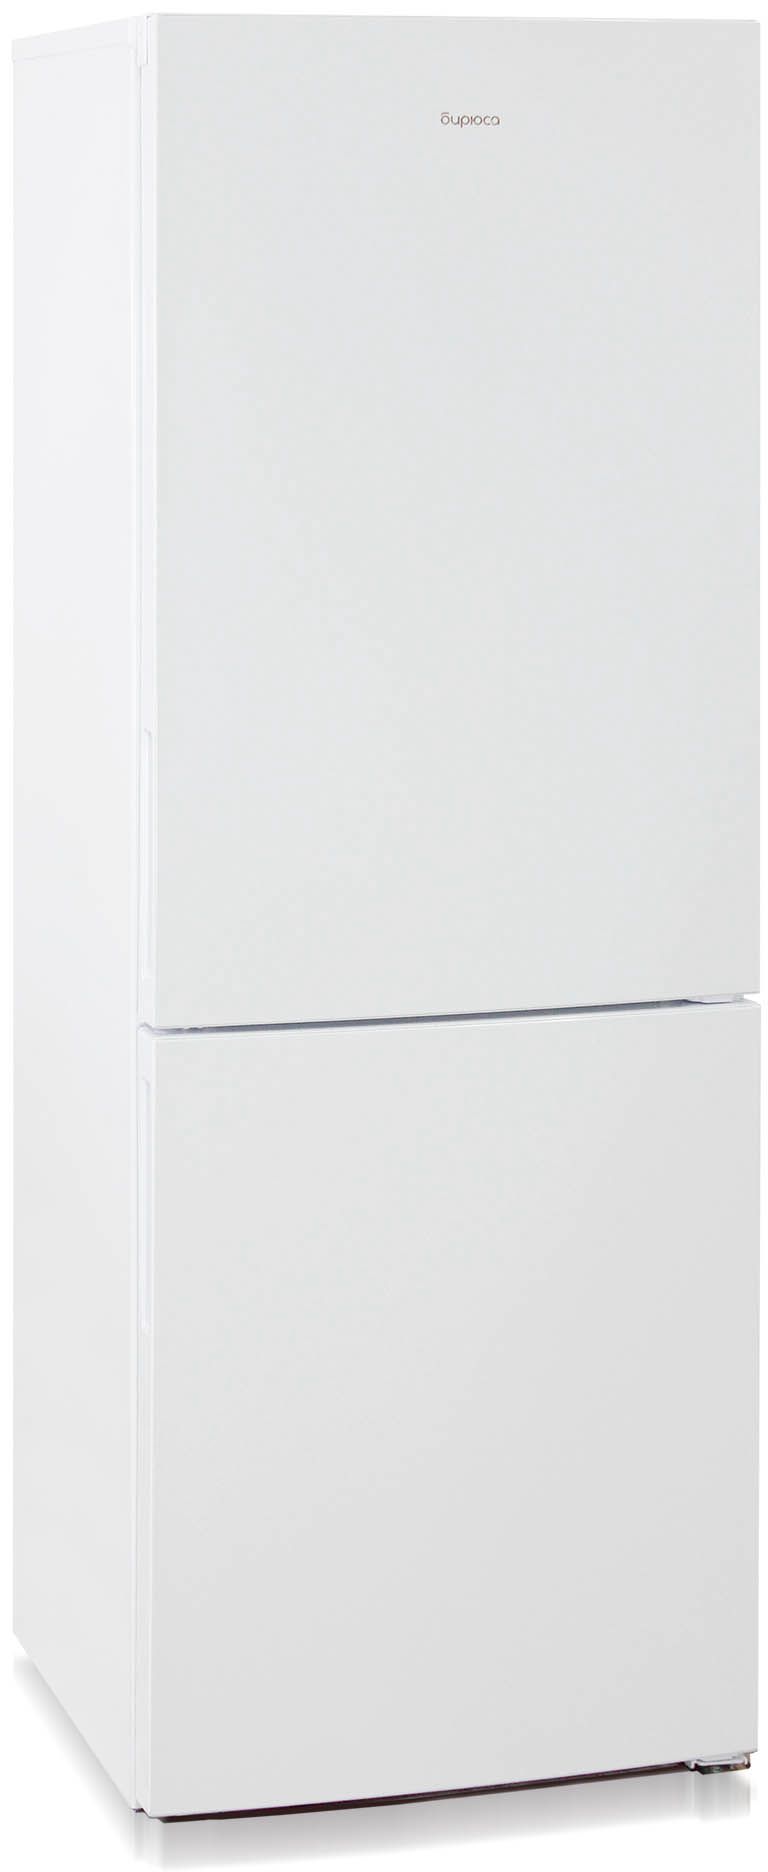 холодильник бирюса 6033, купить в Красноярске холодильник бирюса 6033,  купить в Красноярске дешево холодильник бирюса 6033, купить в Красноярске минимальной цене холодильник бирюса 6033